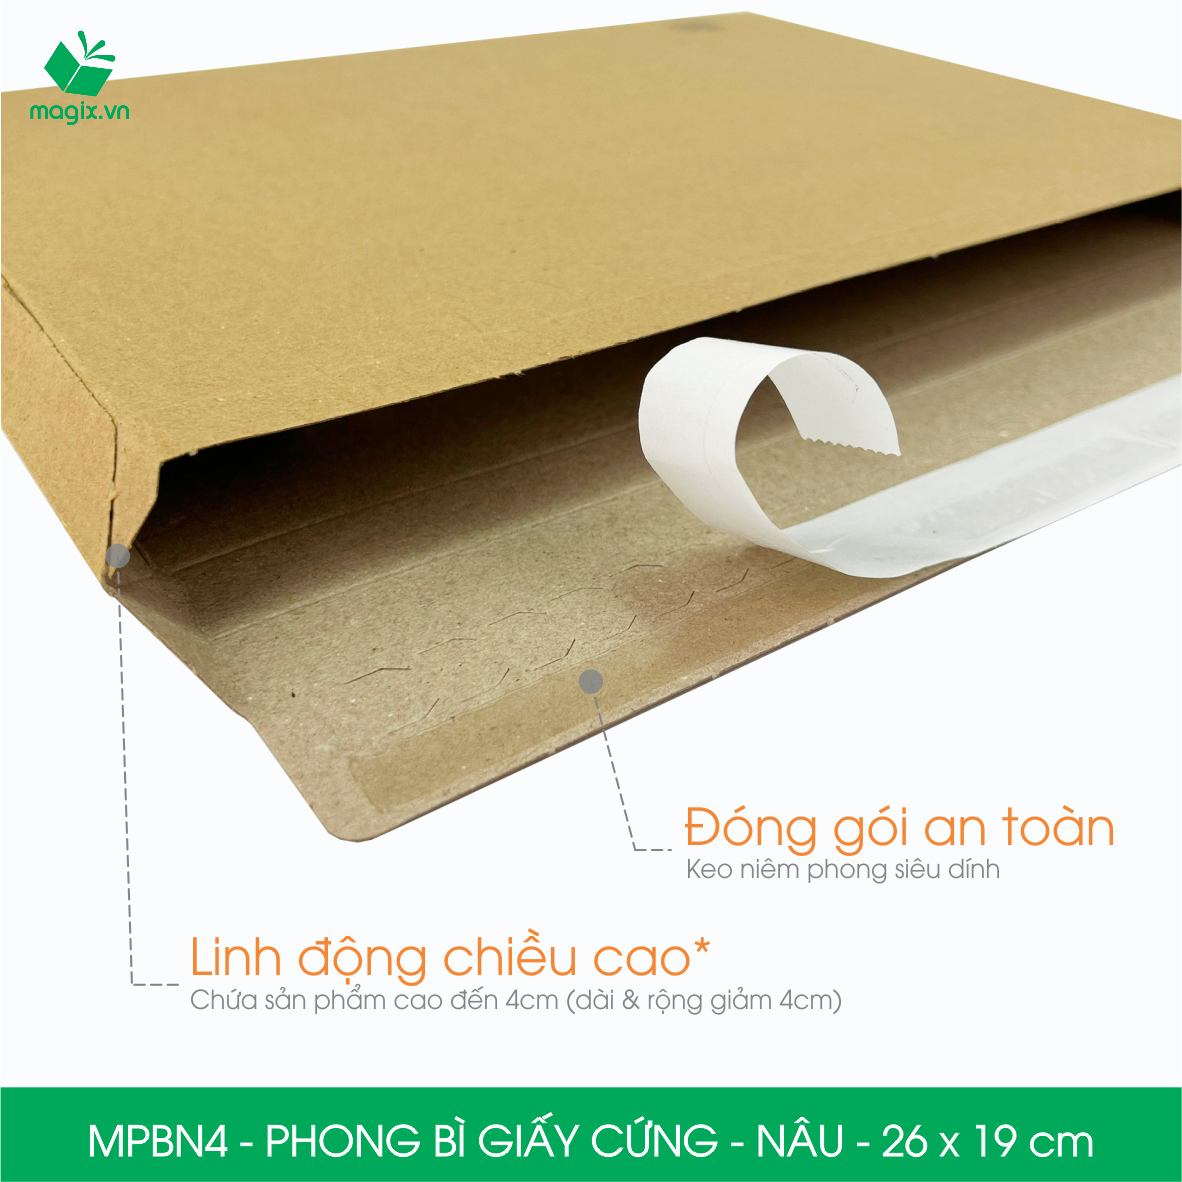 MPBN4 - 26x19 cm - Combo 20 phong bì giấy cứng đóng hàng màu nâu thay thế túi gói hàng